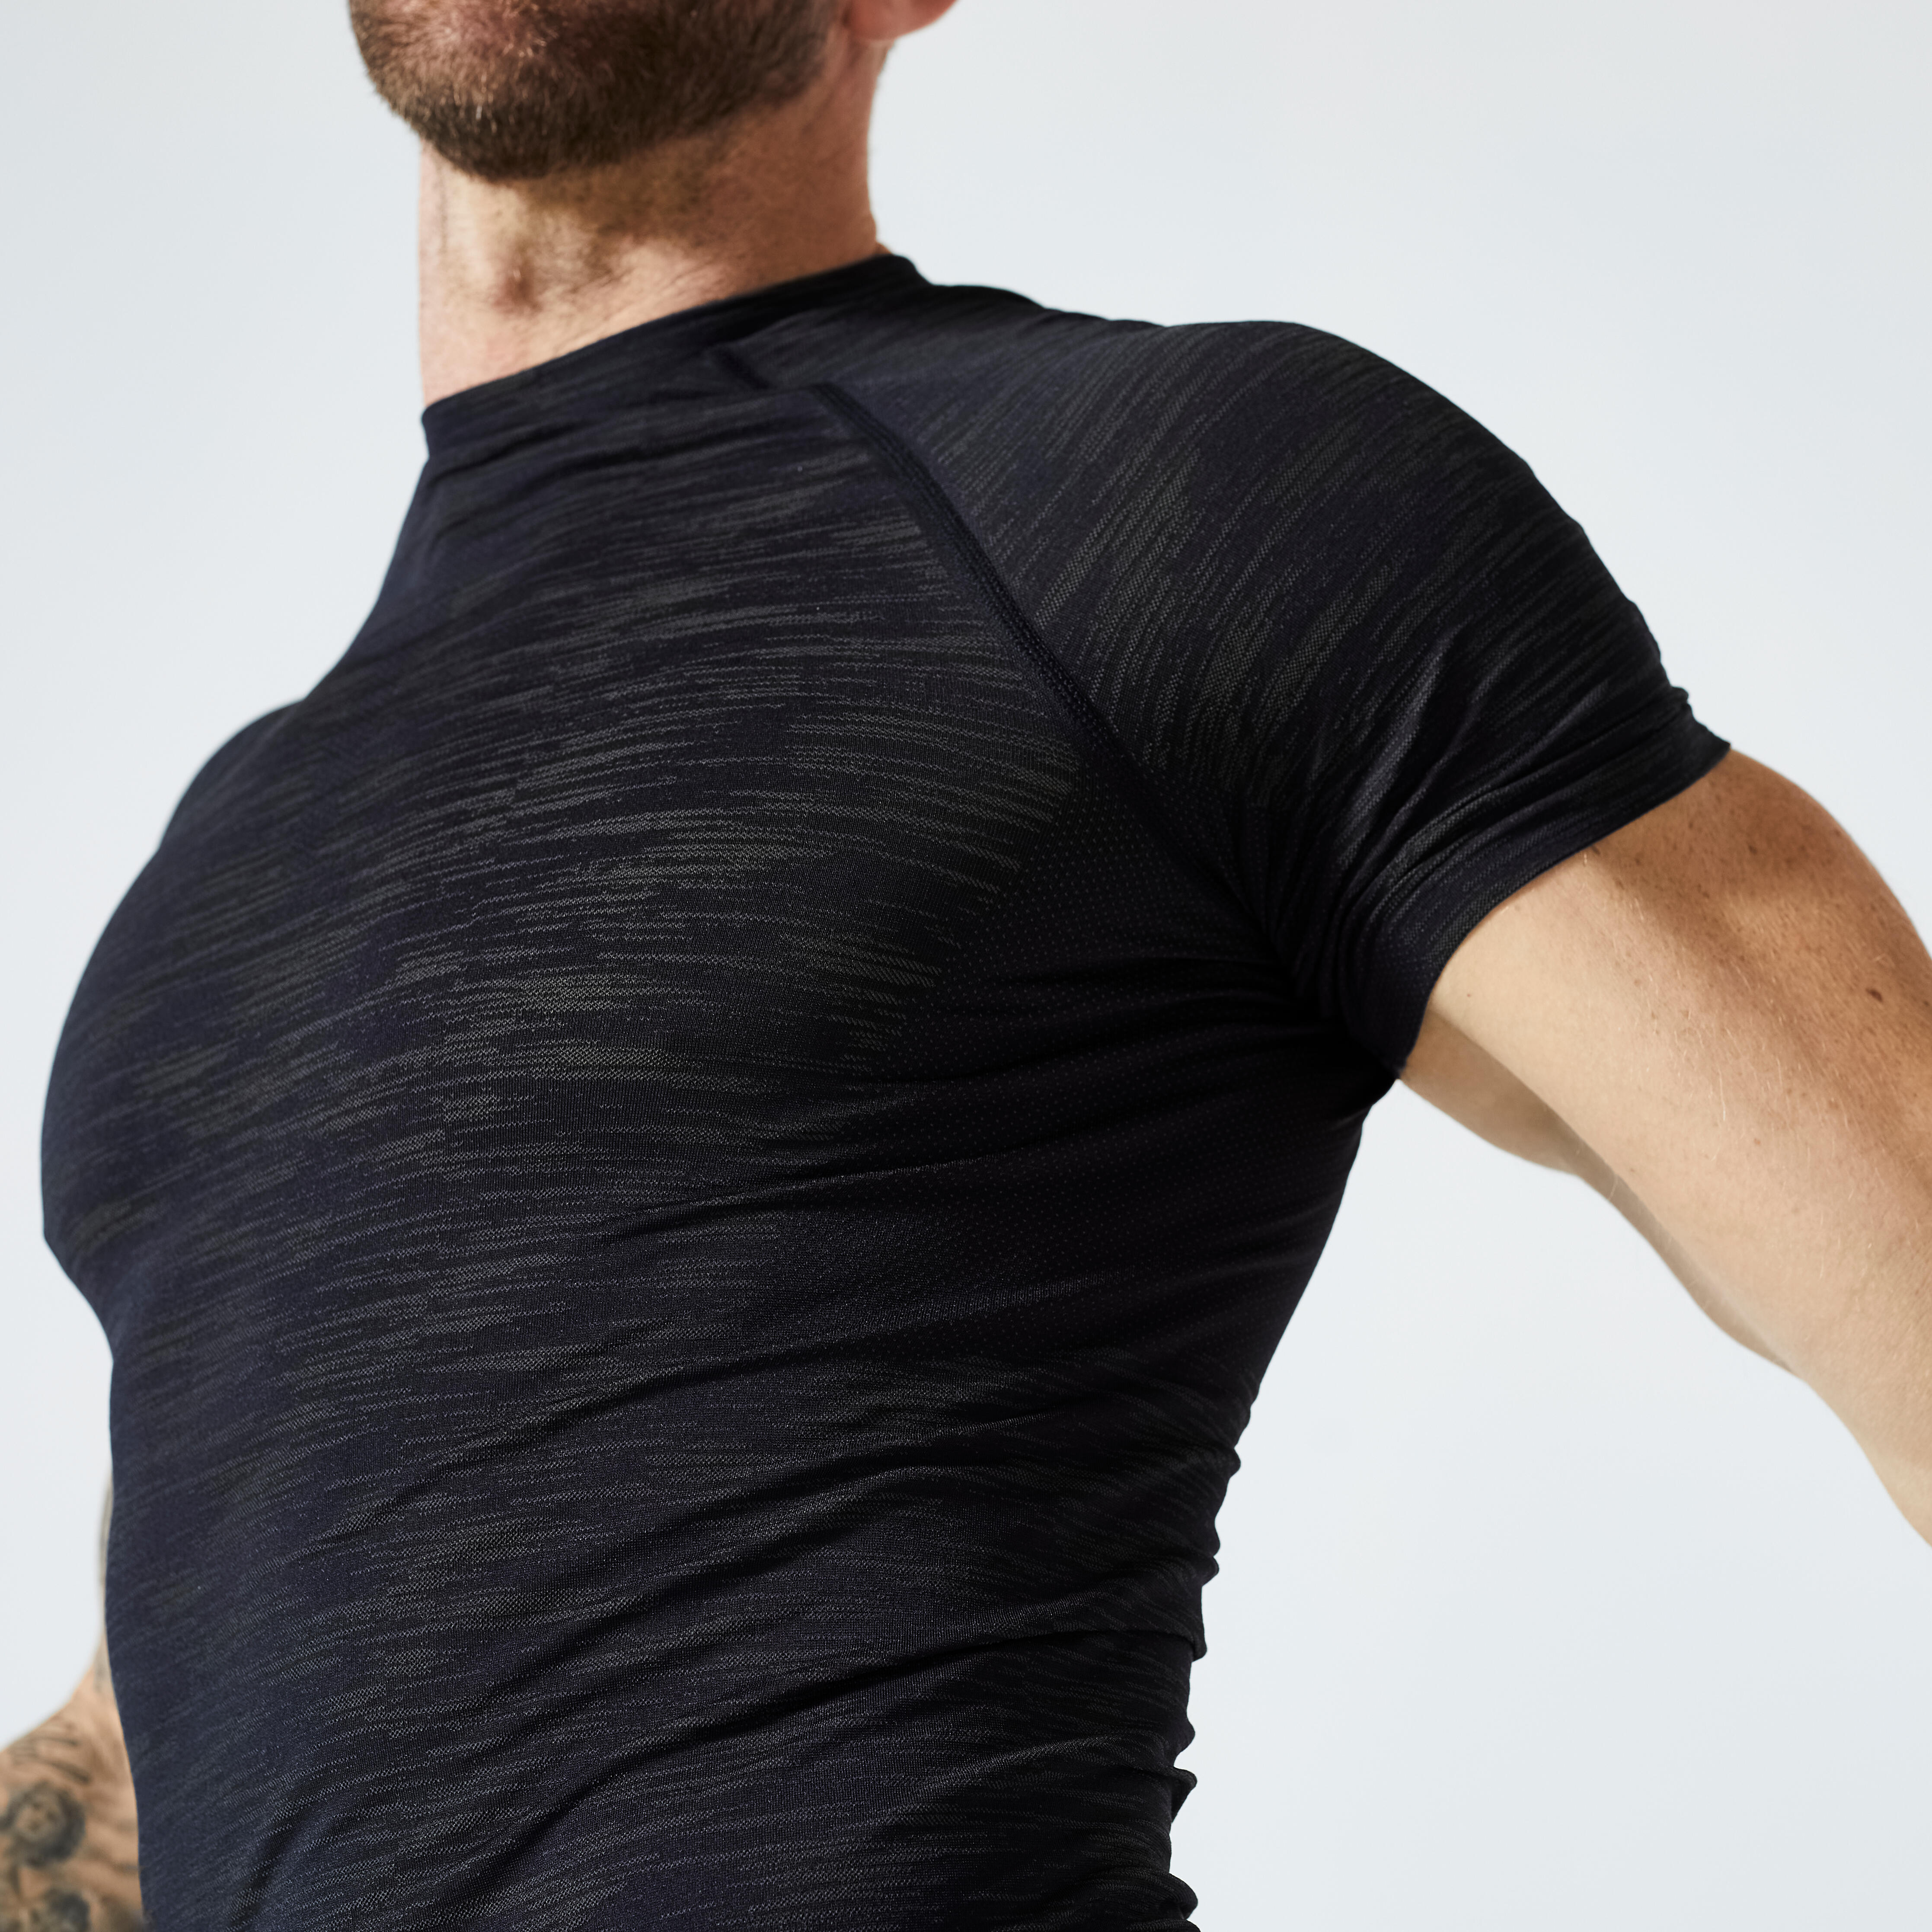 T-shirt de compression homme - 500 - Noir, Vert bronze - Domyos - Décathlon